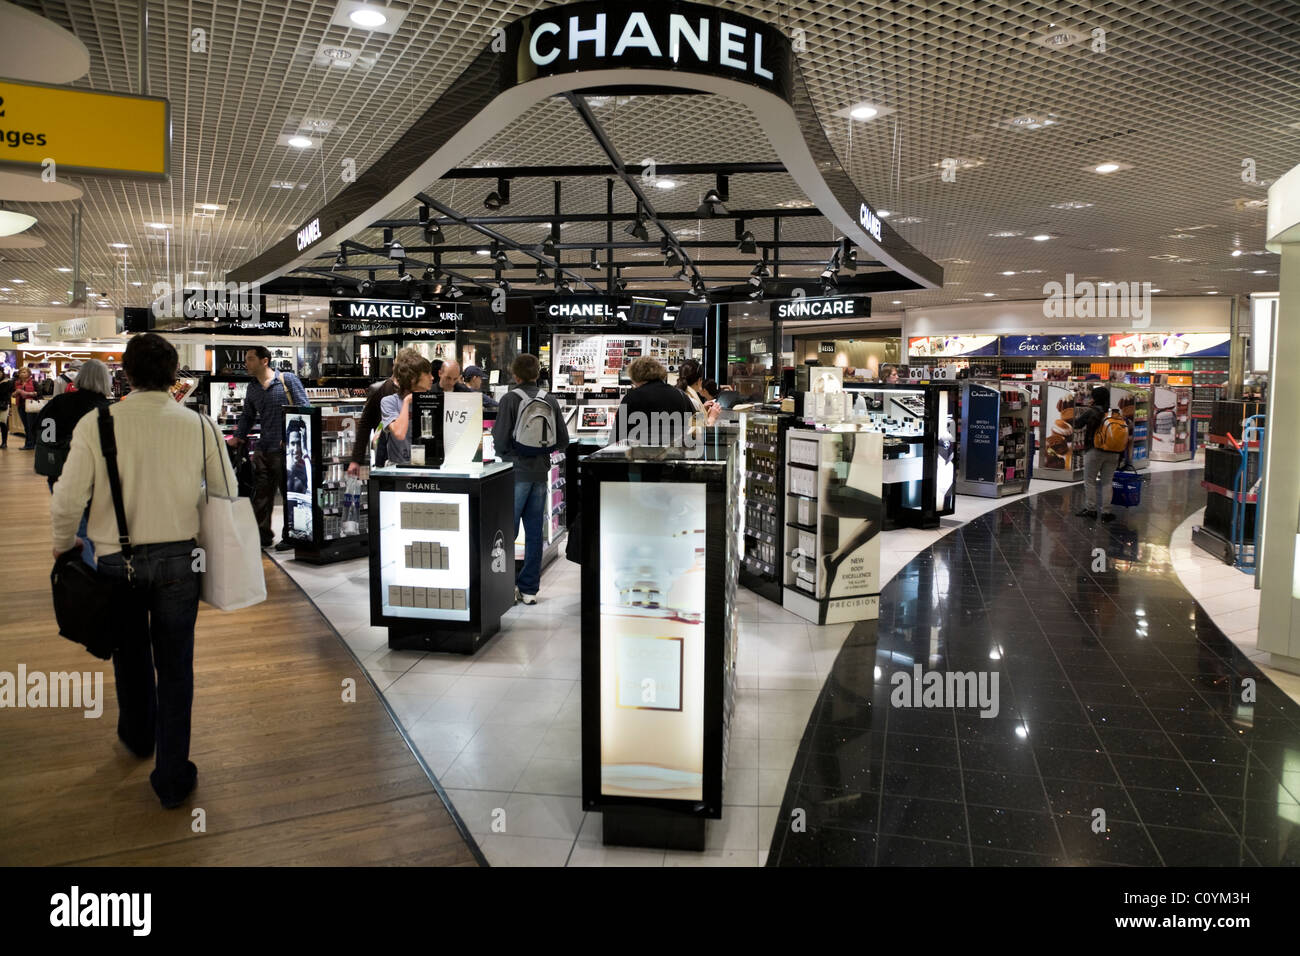 Chanel outlet Banque de photographies et d'images à haute résolution - Alamy